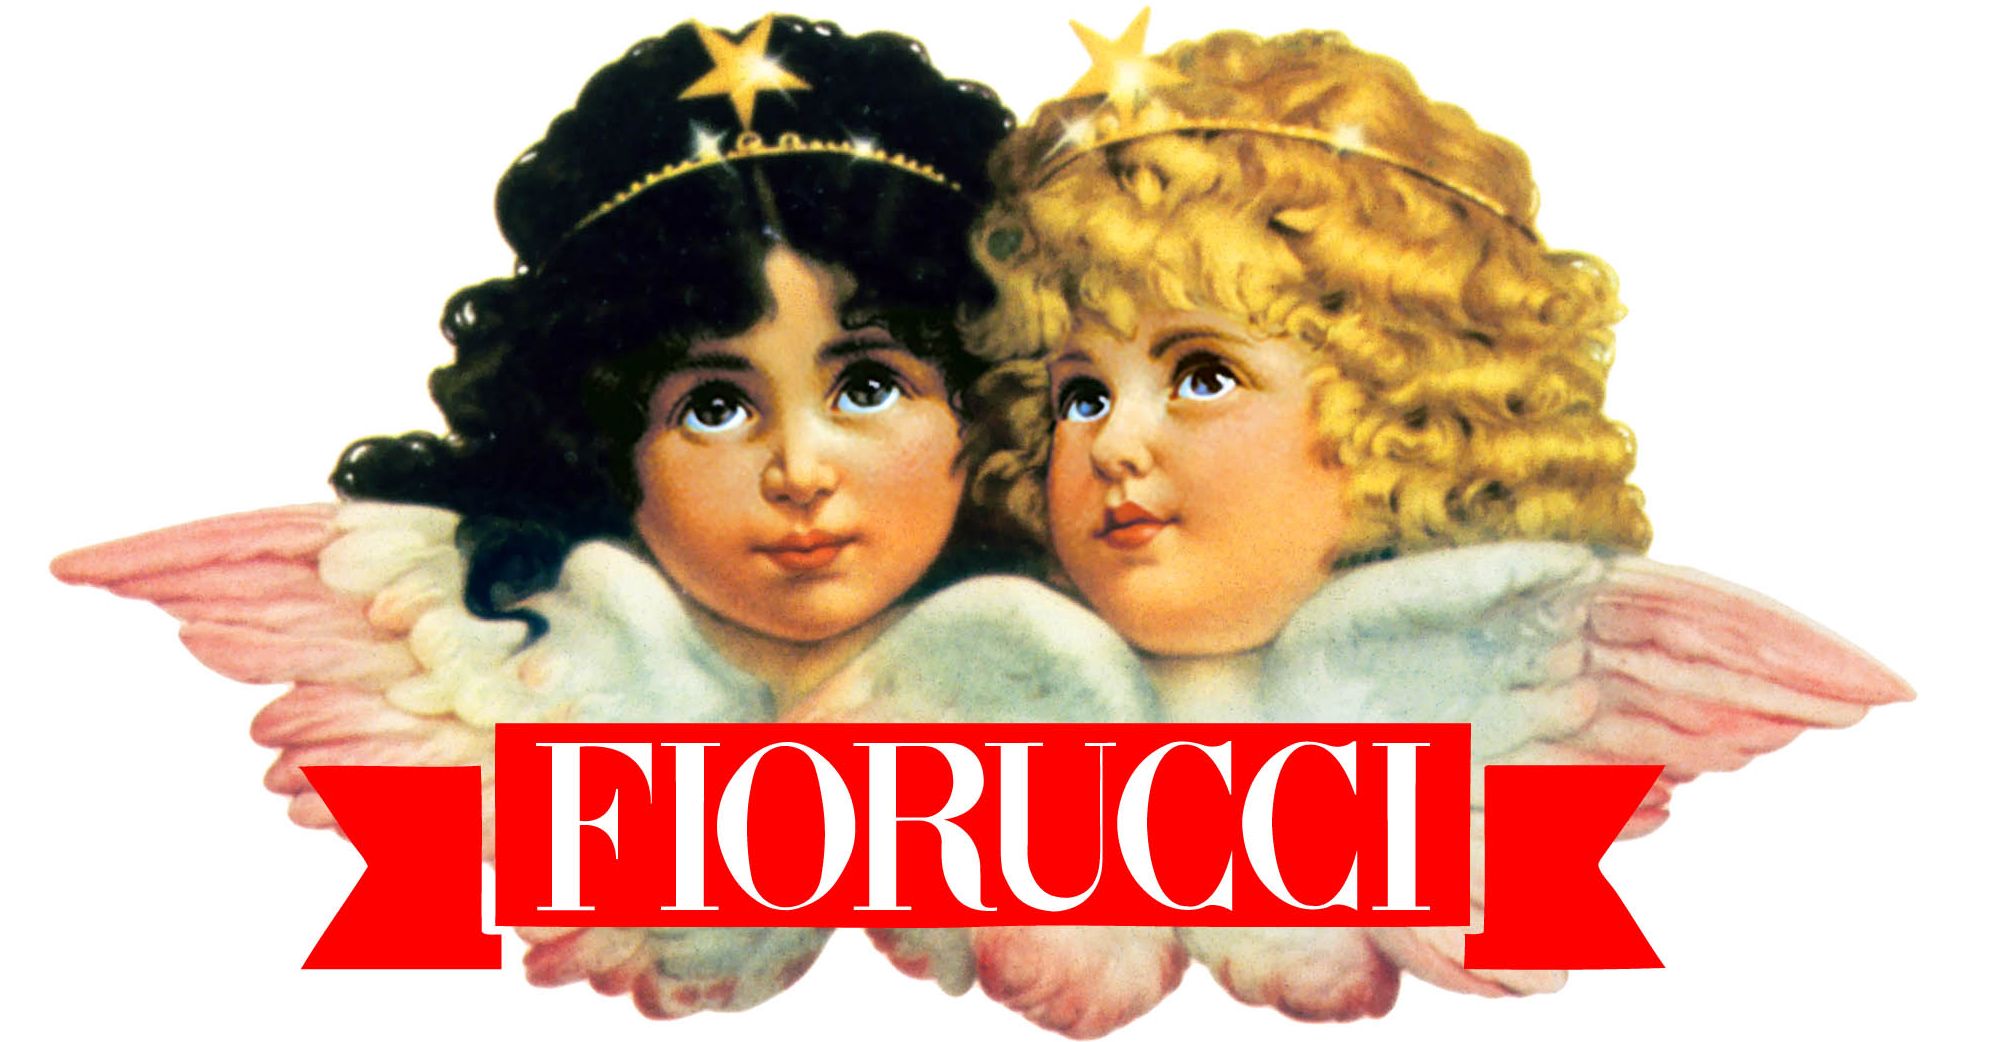 historia de fiorucci - elio fiorucci - danielastyling